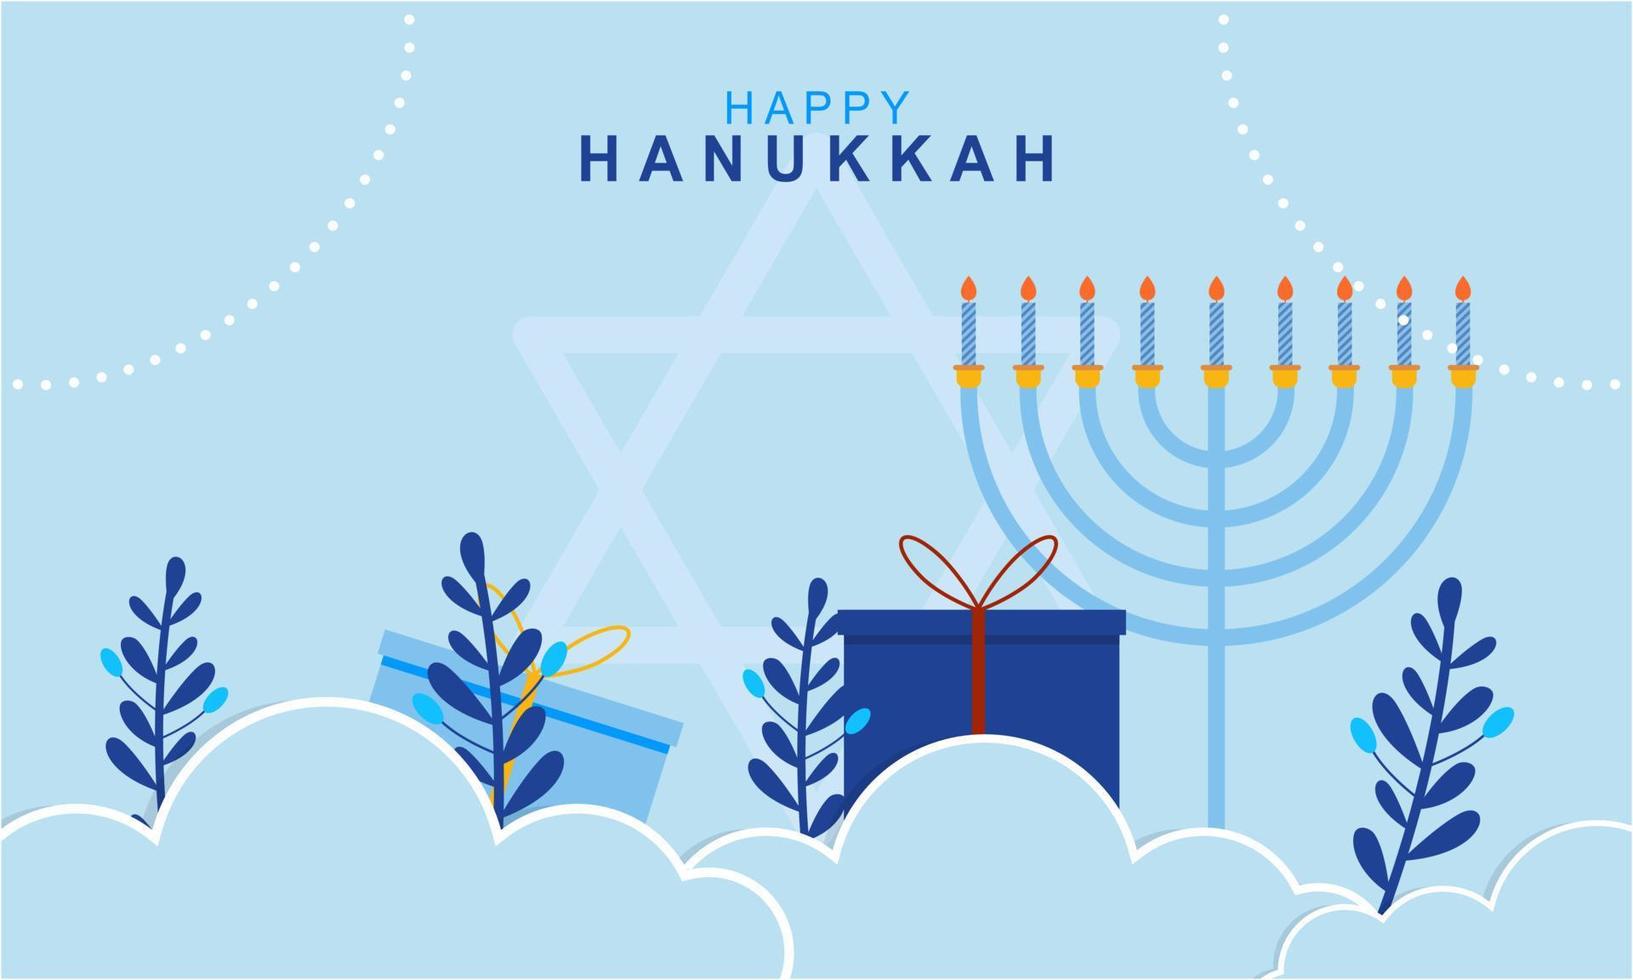 menorah de hanukkah. concept de hanukkah joyeuse fête juive vecteur